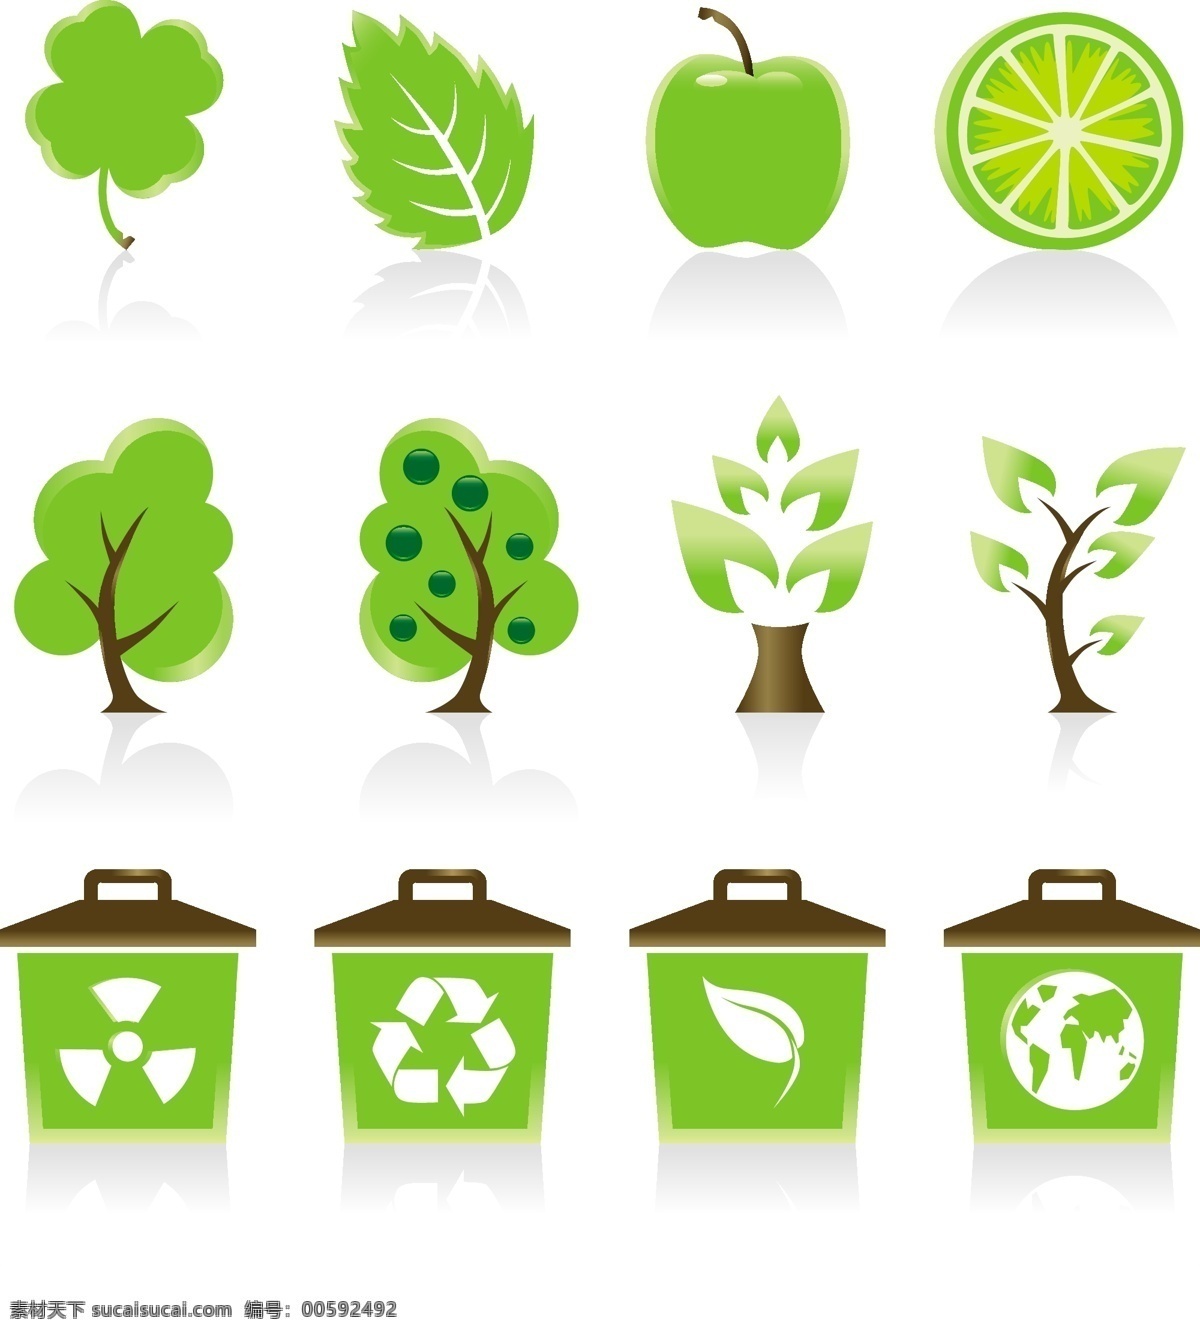 套 绿色环保 图标 矢量 春天 地球 发芽 房子 环保标志 垃圾桶 绿色 嫩叶 柠檬 苹果 树叶 树木 水底 汽车 矢量图